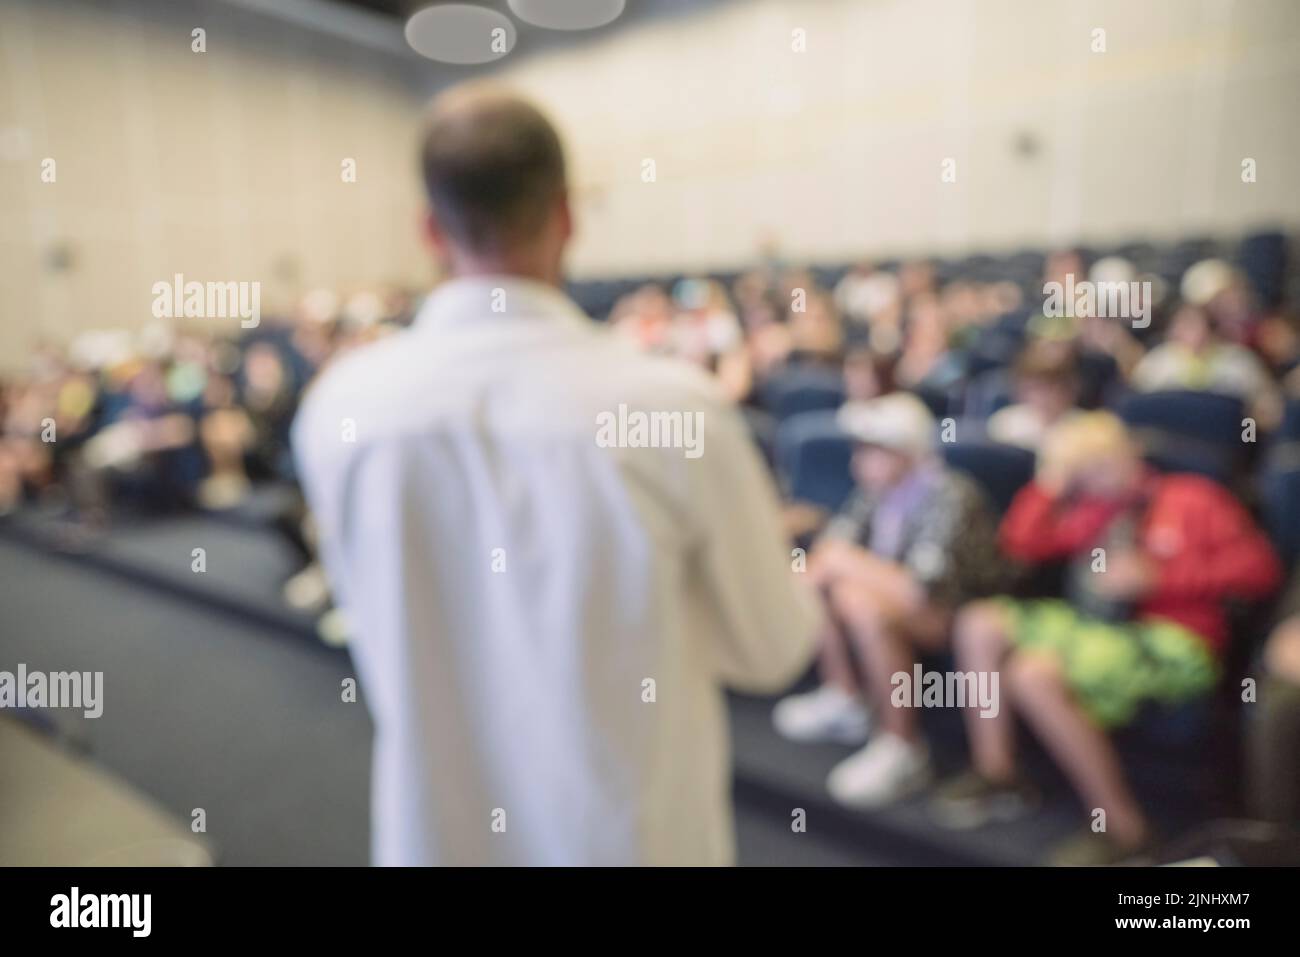 Abstract offuscato persone lezione in sala seminari, concetto di istruzione. Foto di alta qualità Foto Stock